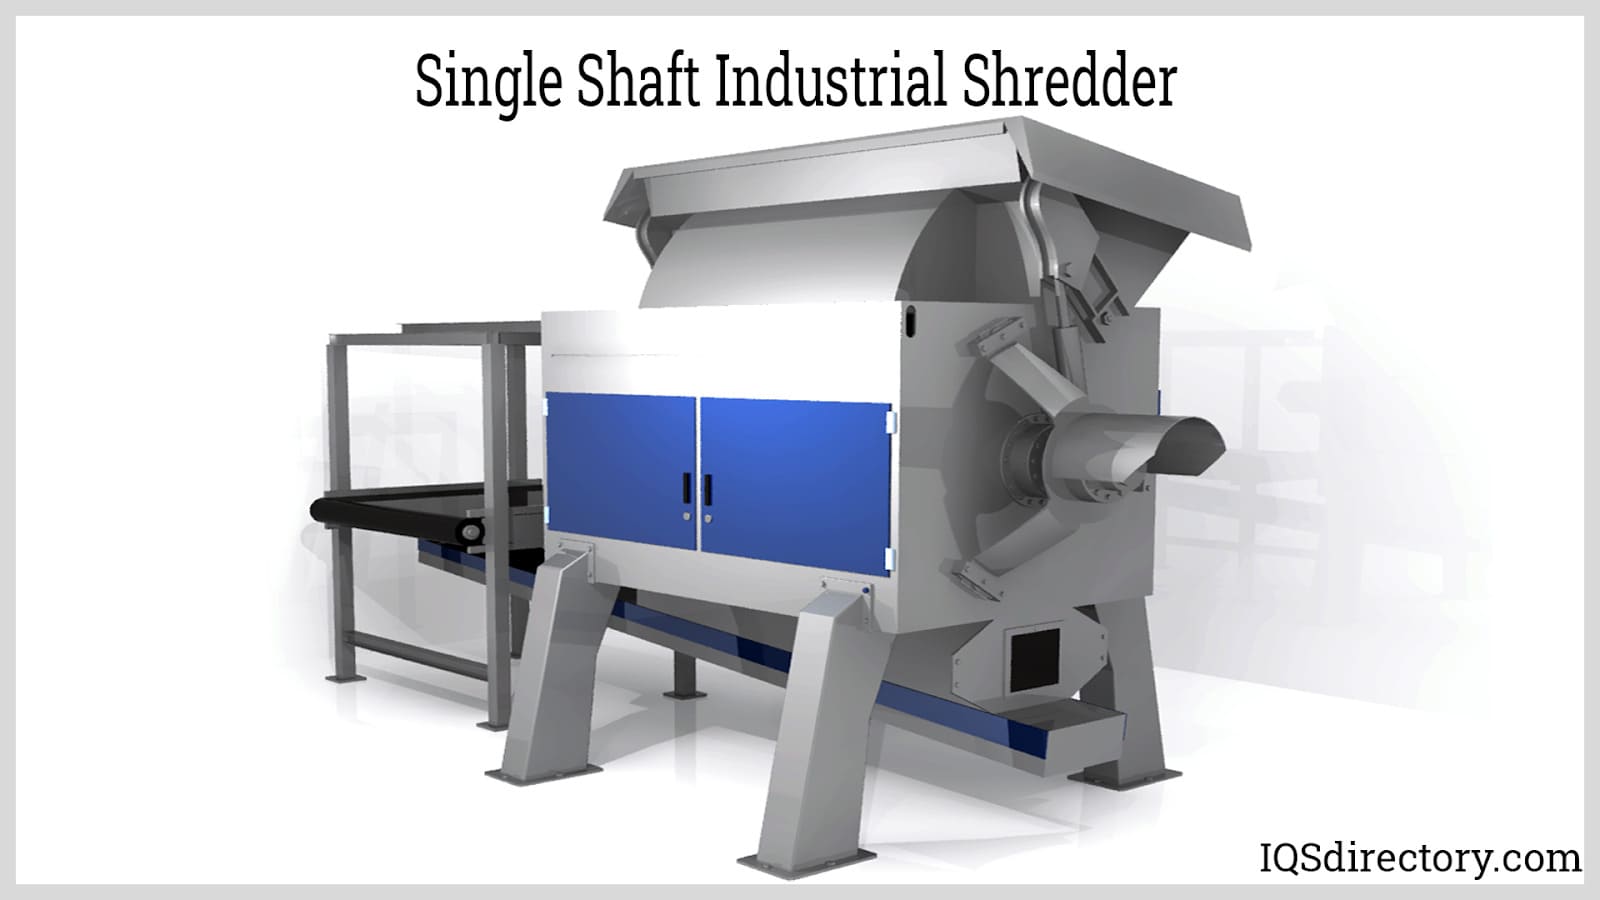 Machines :: Shredder :: Shredder Kits :: Shredder Mini